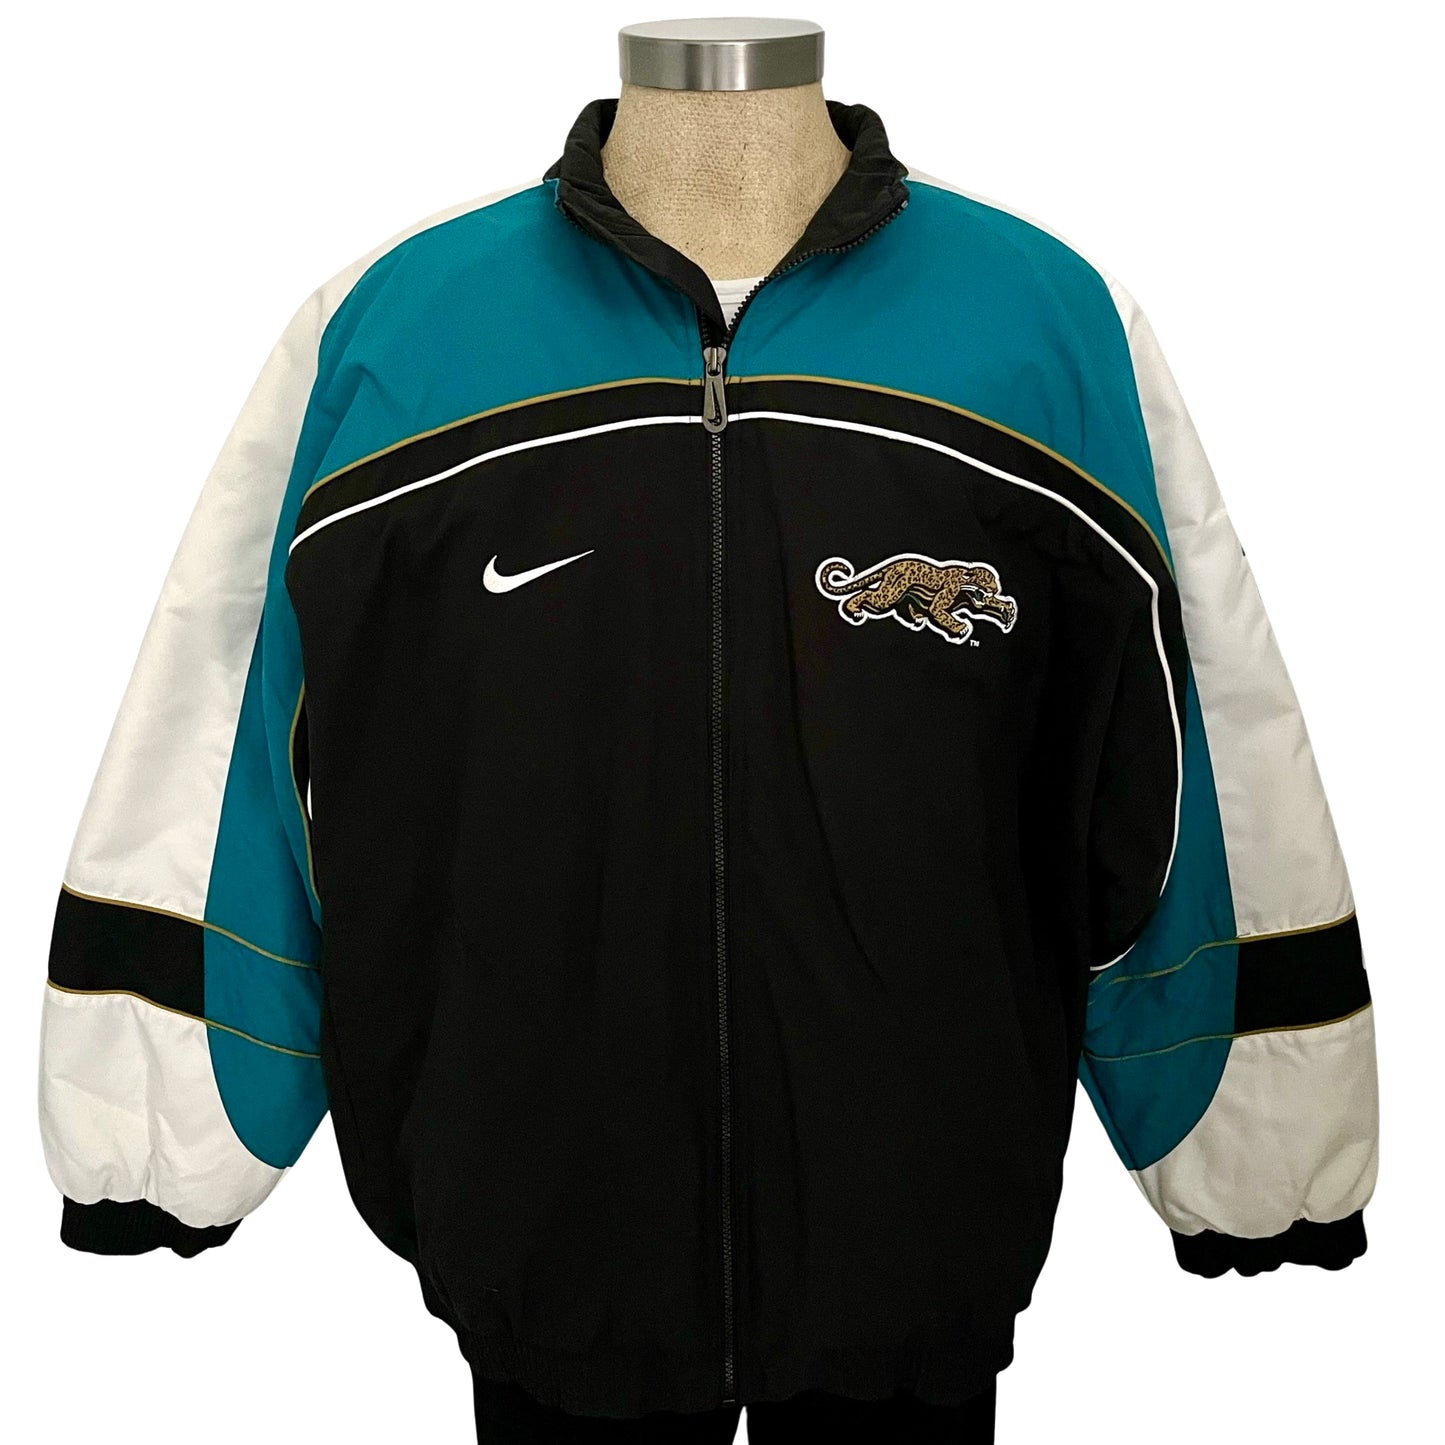 Vintage Jacksonville Jaguars Nike prowler jacket size 2XL